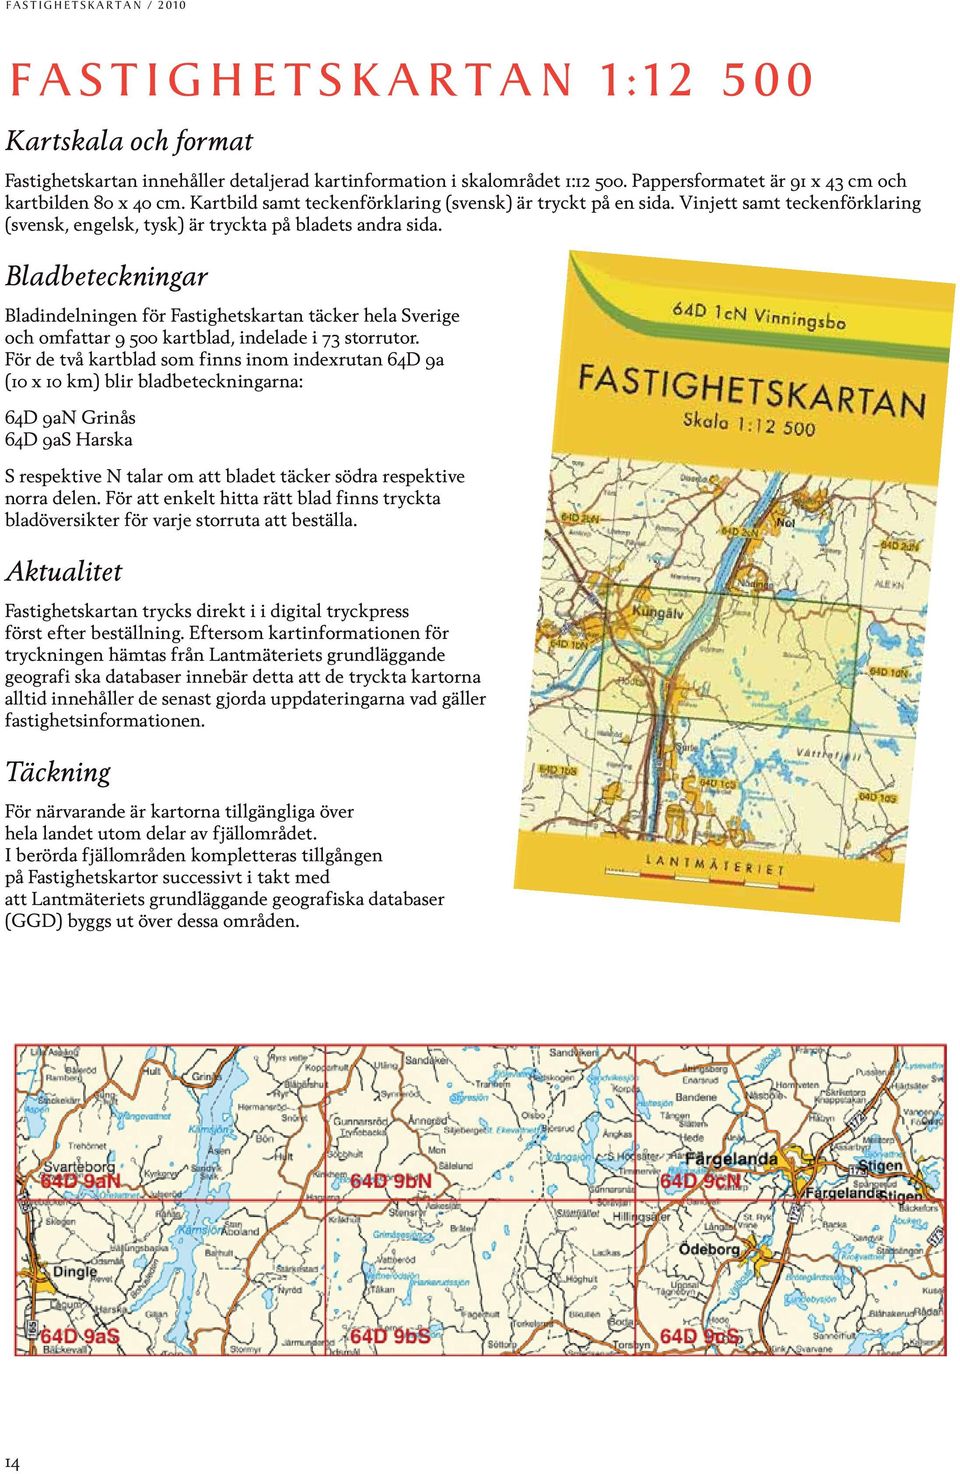 Vinjett samt teckenförklaring (svensk, engelsk, tysk) är tryckta på bladets andra sida.